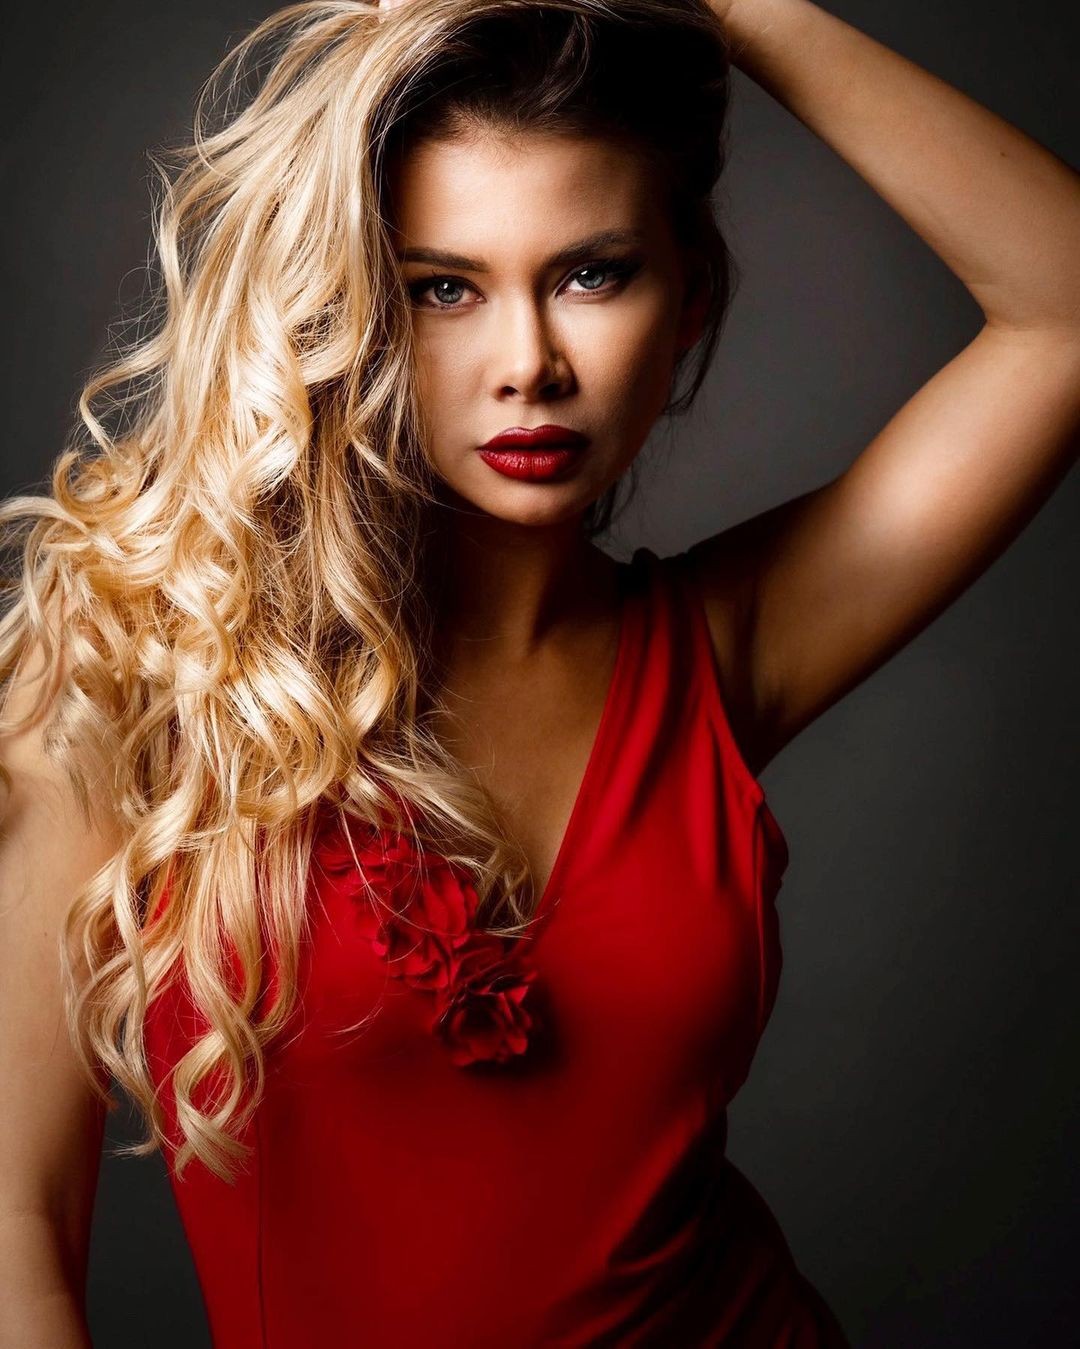 Kristina Plamenova, Miss Bulgária — Foto: Reprodução/Instagram